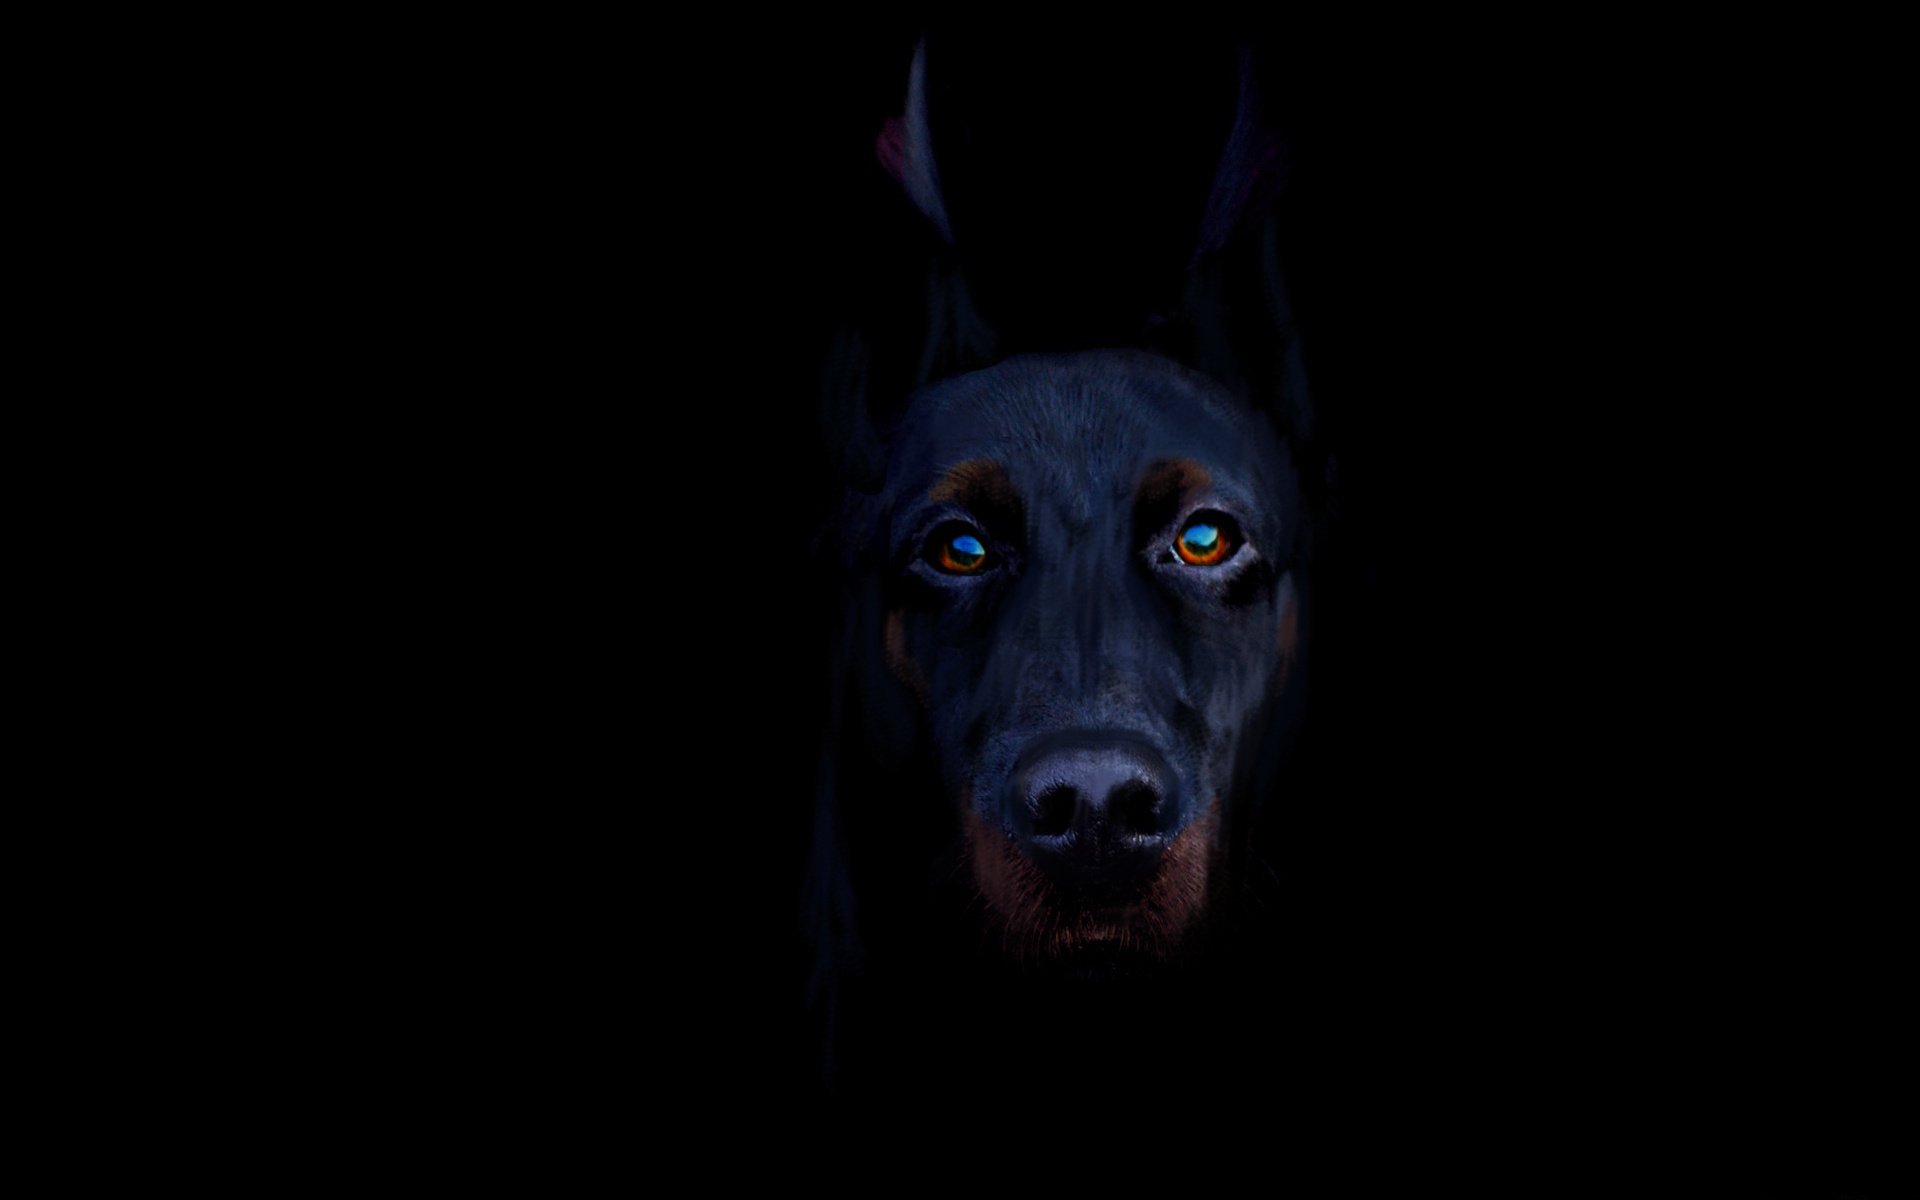 черно-подпалый доберман собака пес черный фон взгляд порода животное